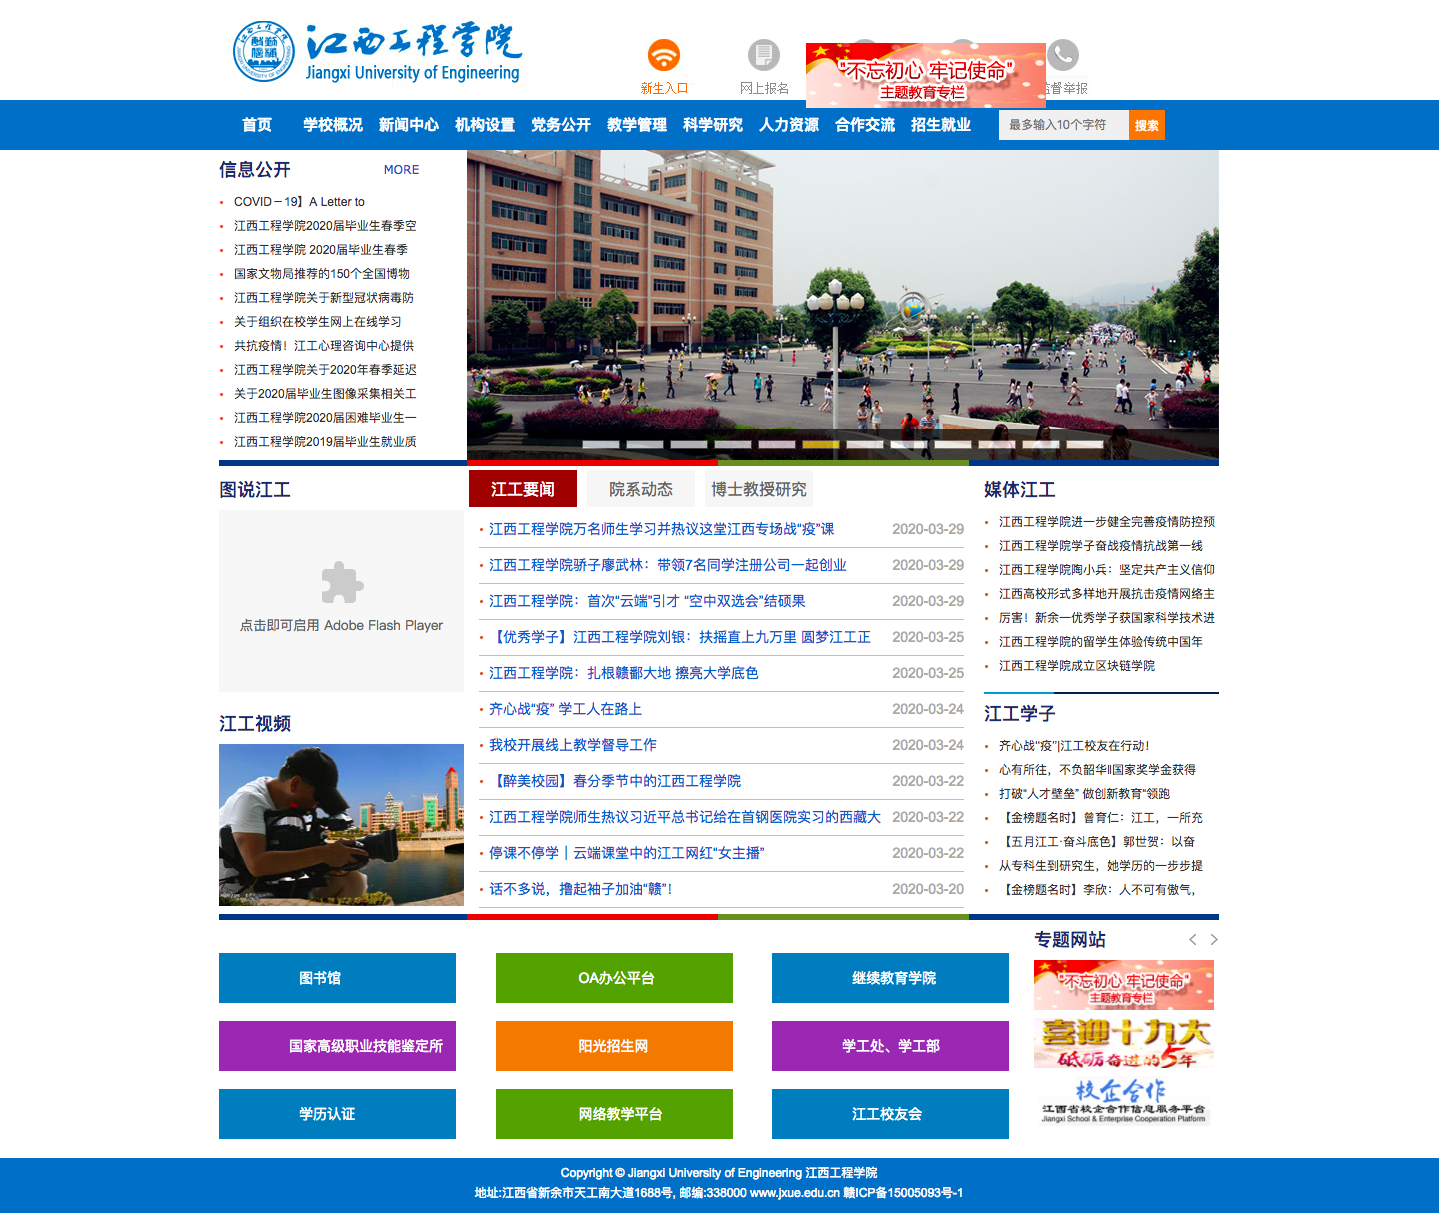 江西工程学院官方网站 － 欢迎访问江西工程学院官方网站 － 江西工程学院是国家教育部批准的全日制统招普通本科高校 Jiangxi University of Engineering.png